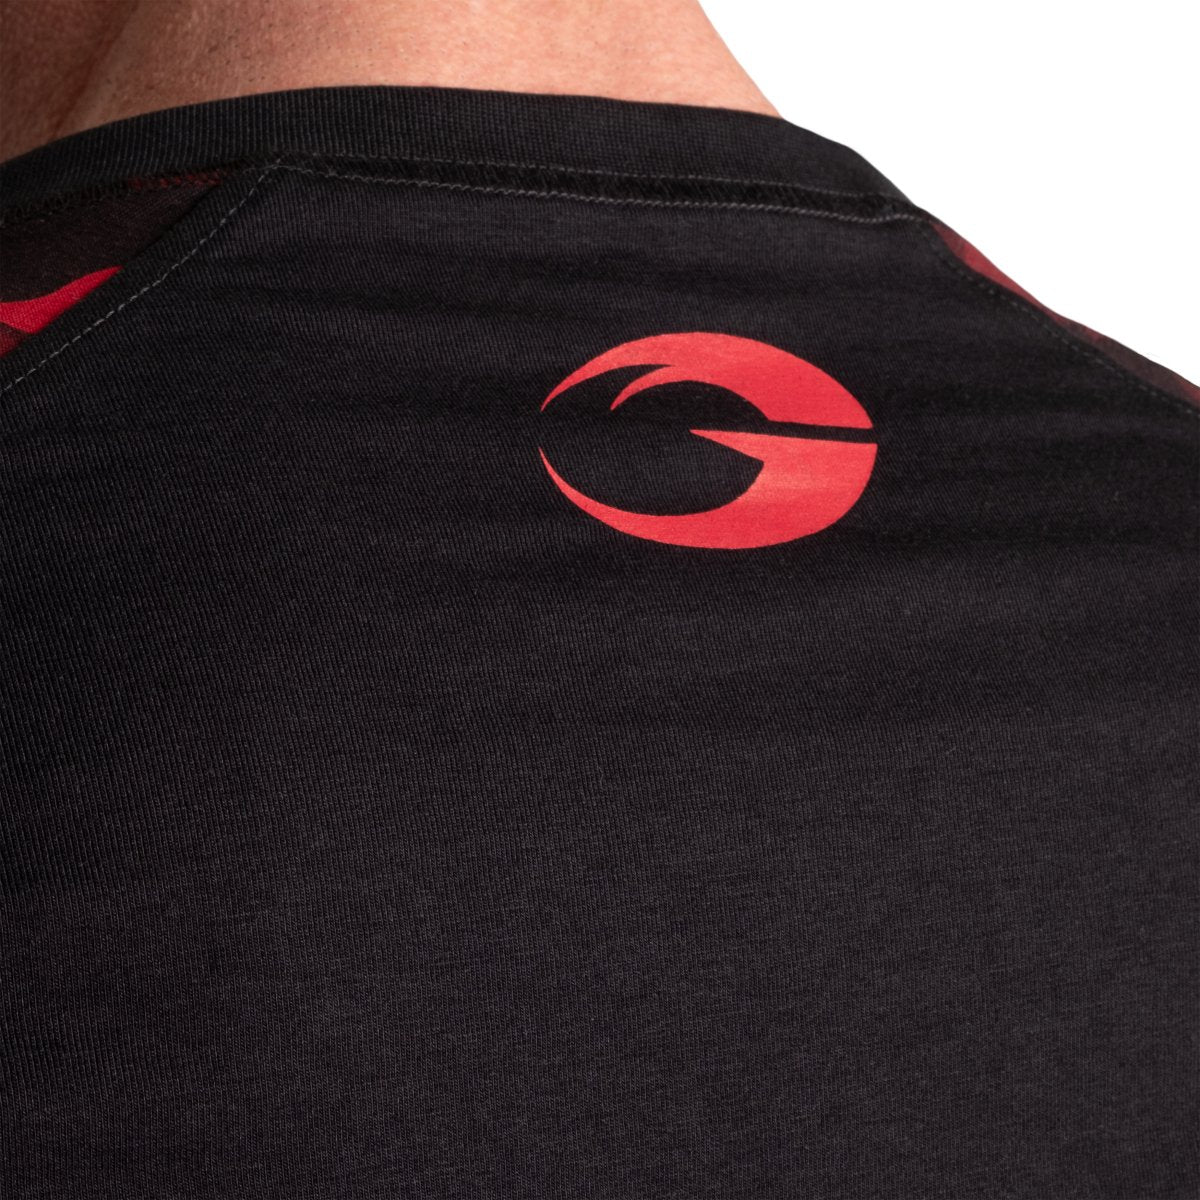 GASP Original Raglan LS - Black/Red Camo - Urban Gym Wear